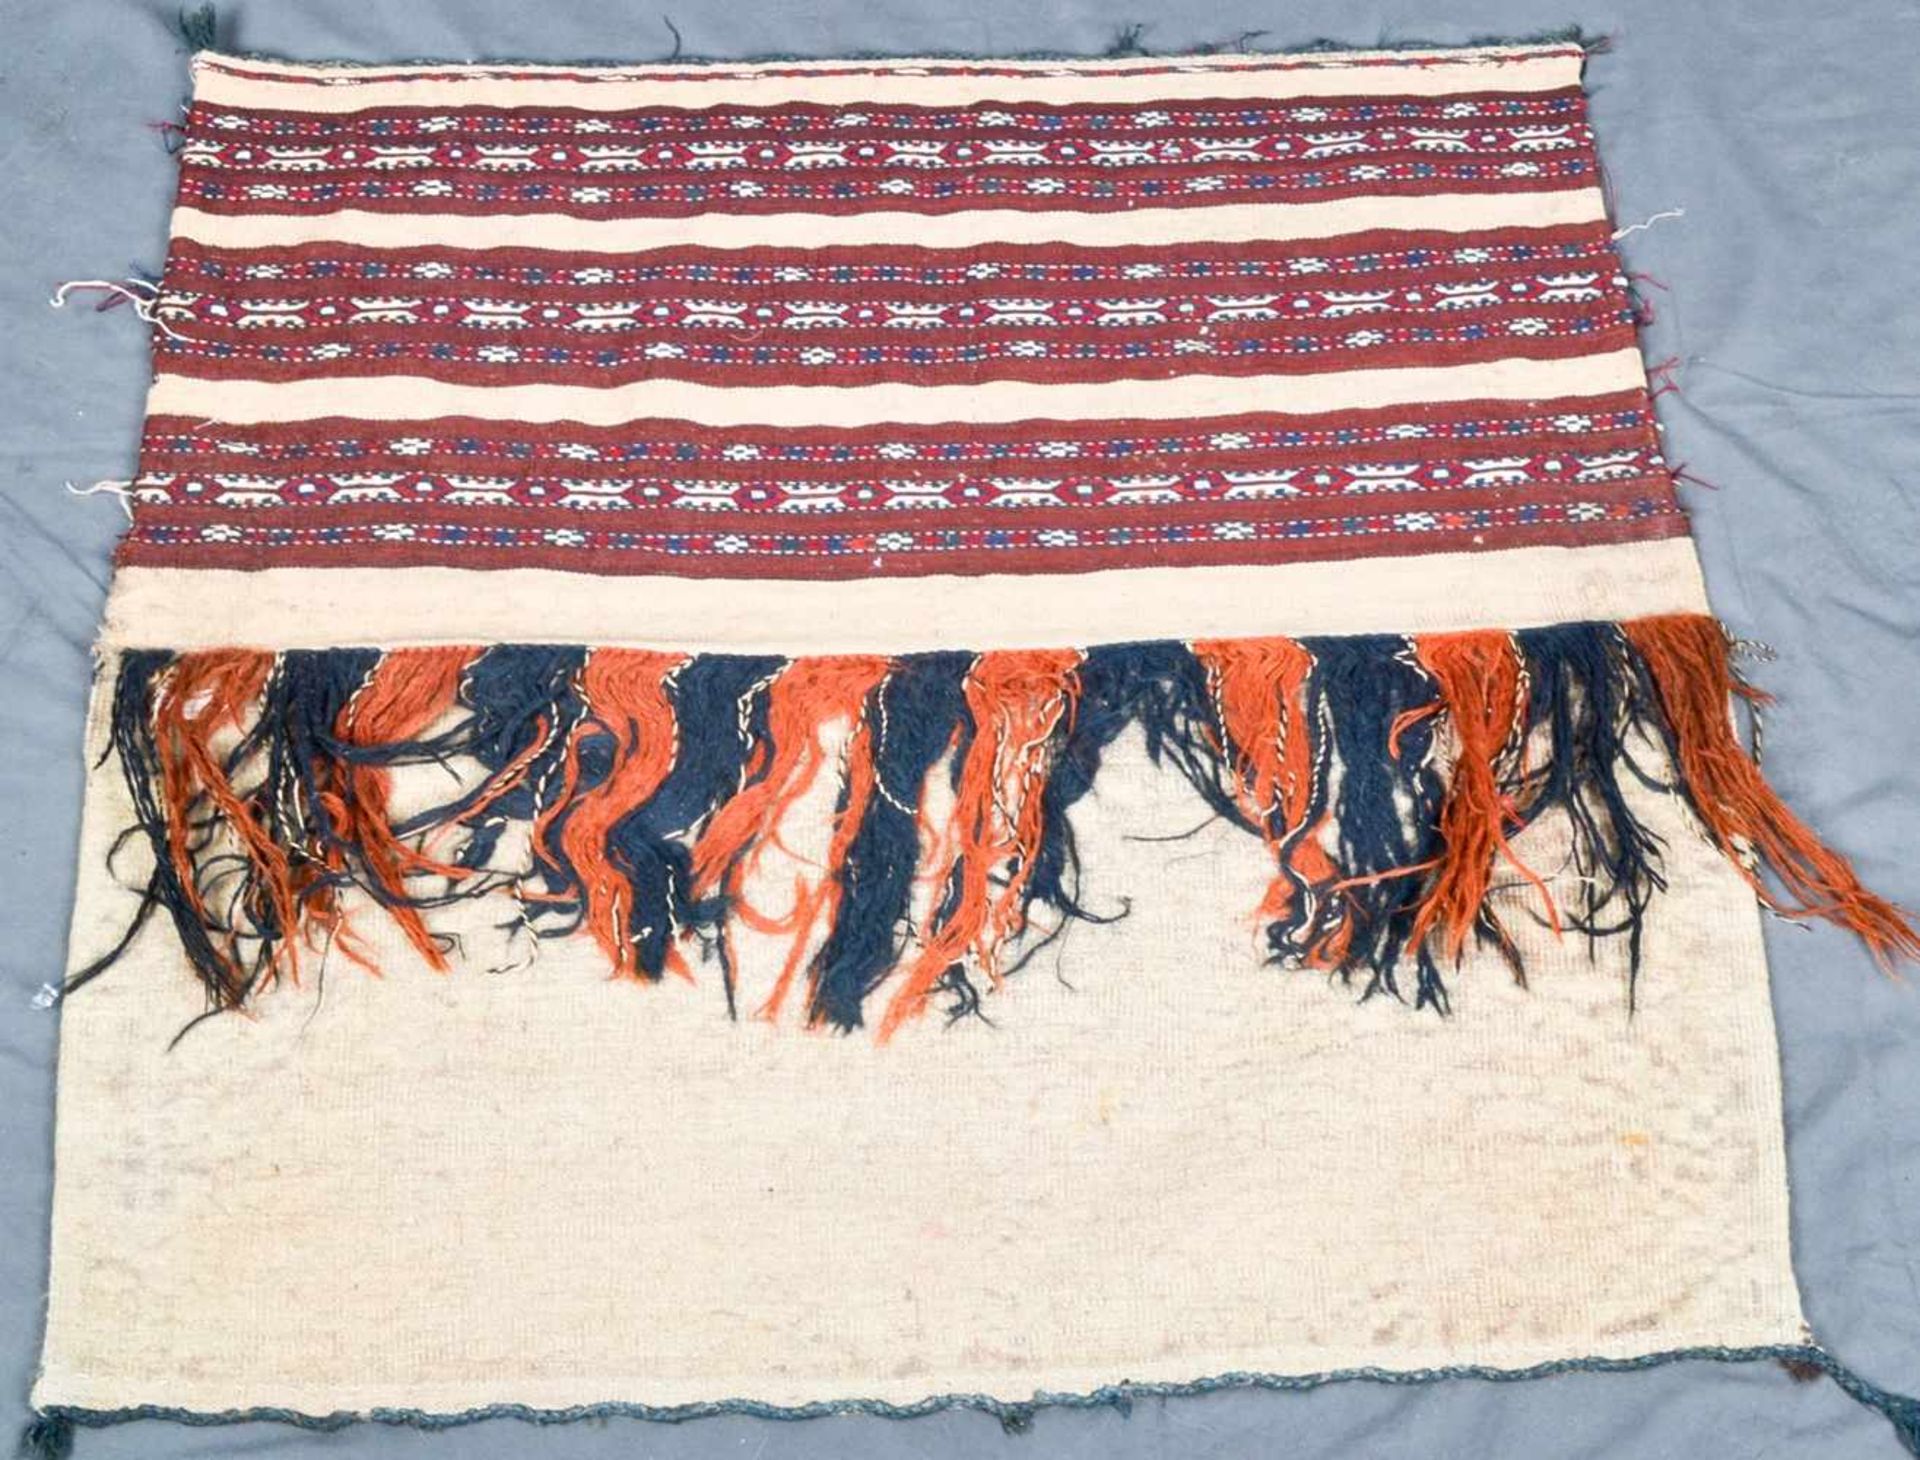 3teiliges Konvolut "alte und antike" Teppiche, bestehend aus drei versch. Kelim bzw. Flachgewebe- - Image 8 of 14